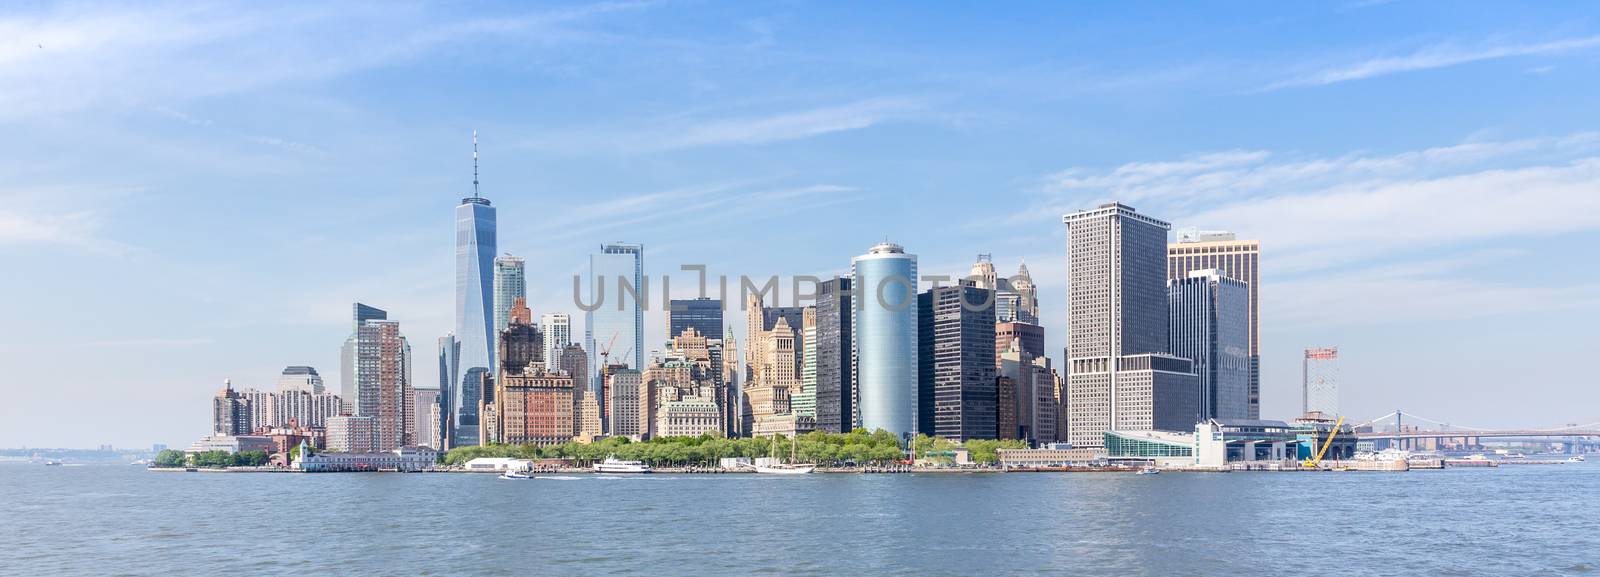 Panoramic view of Lower Manhattan, New York City, USA.